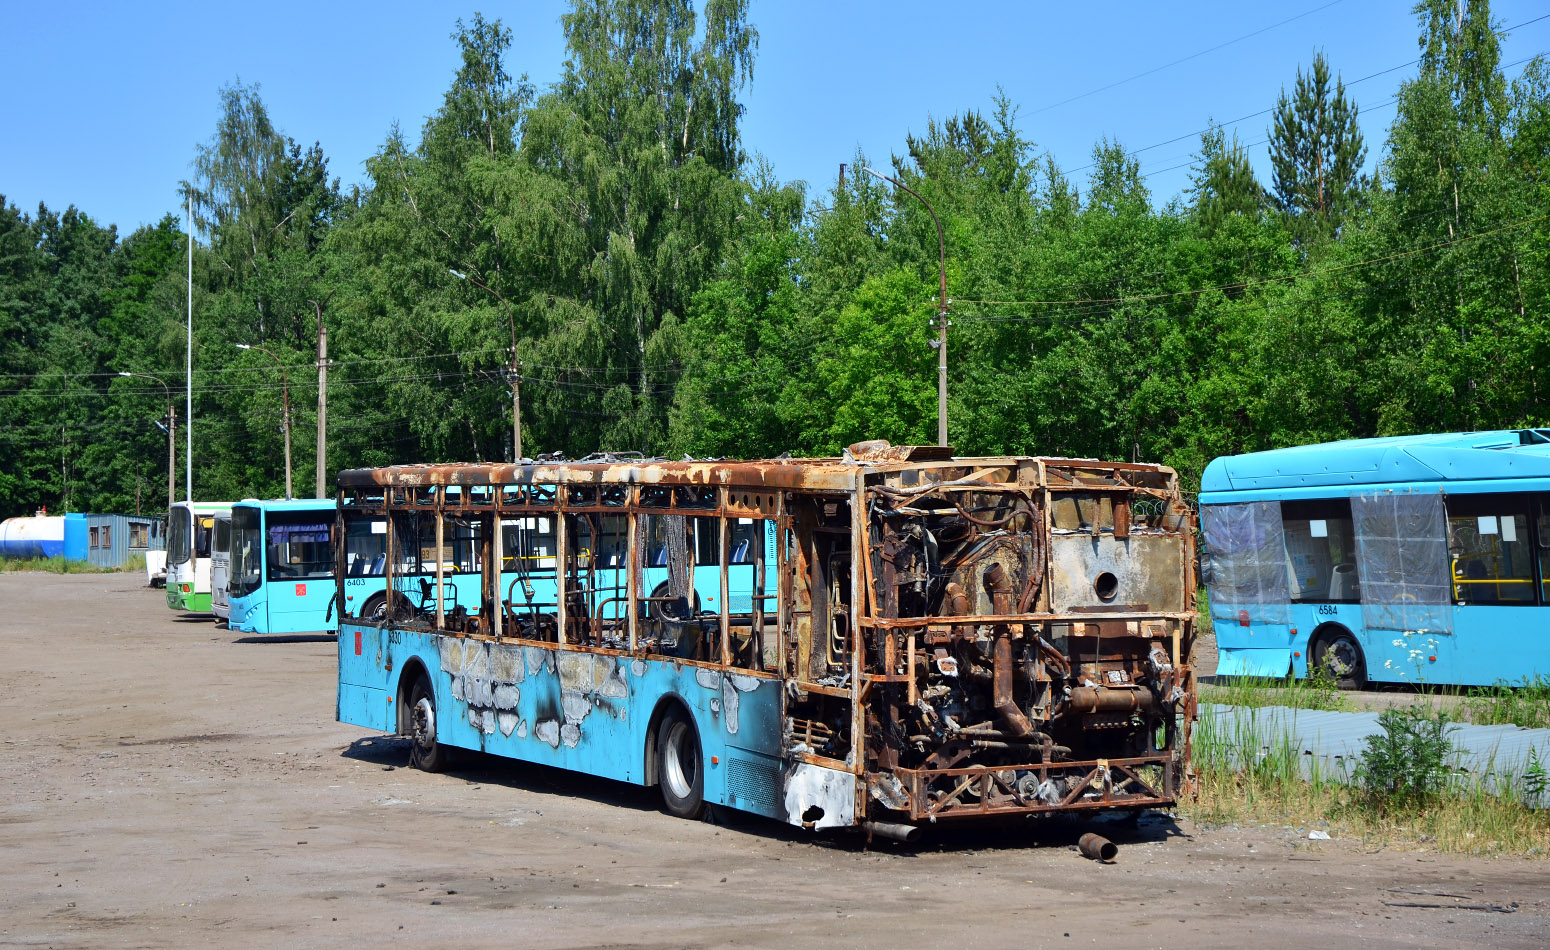 Sanktpēterburga, Volgabus-5270.G2 (LNG) № 6330